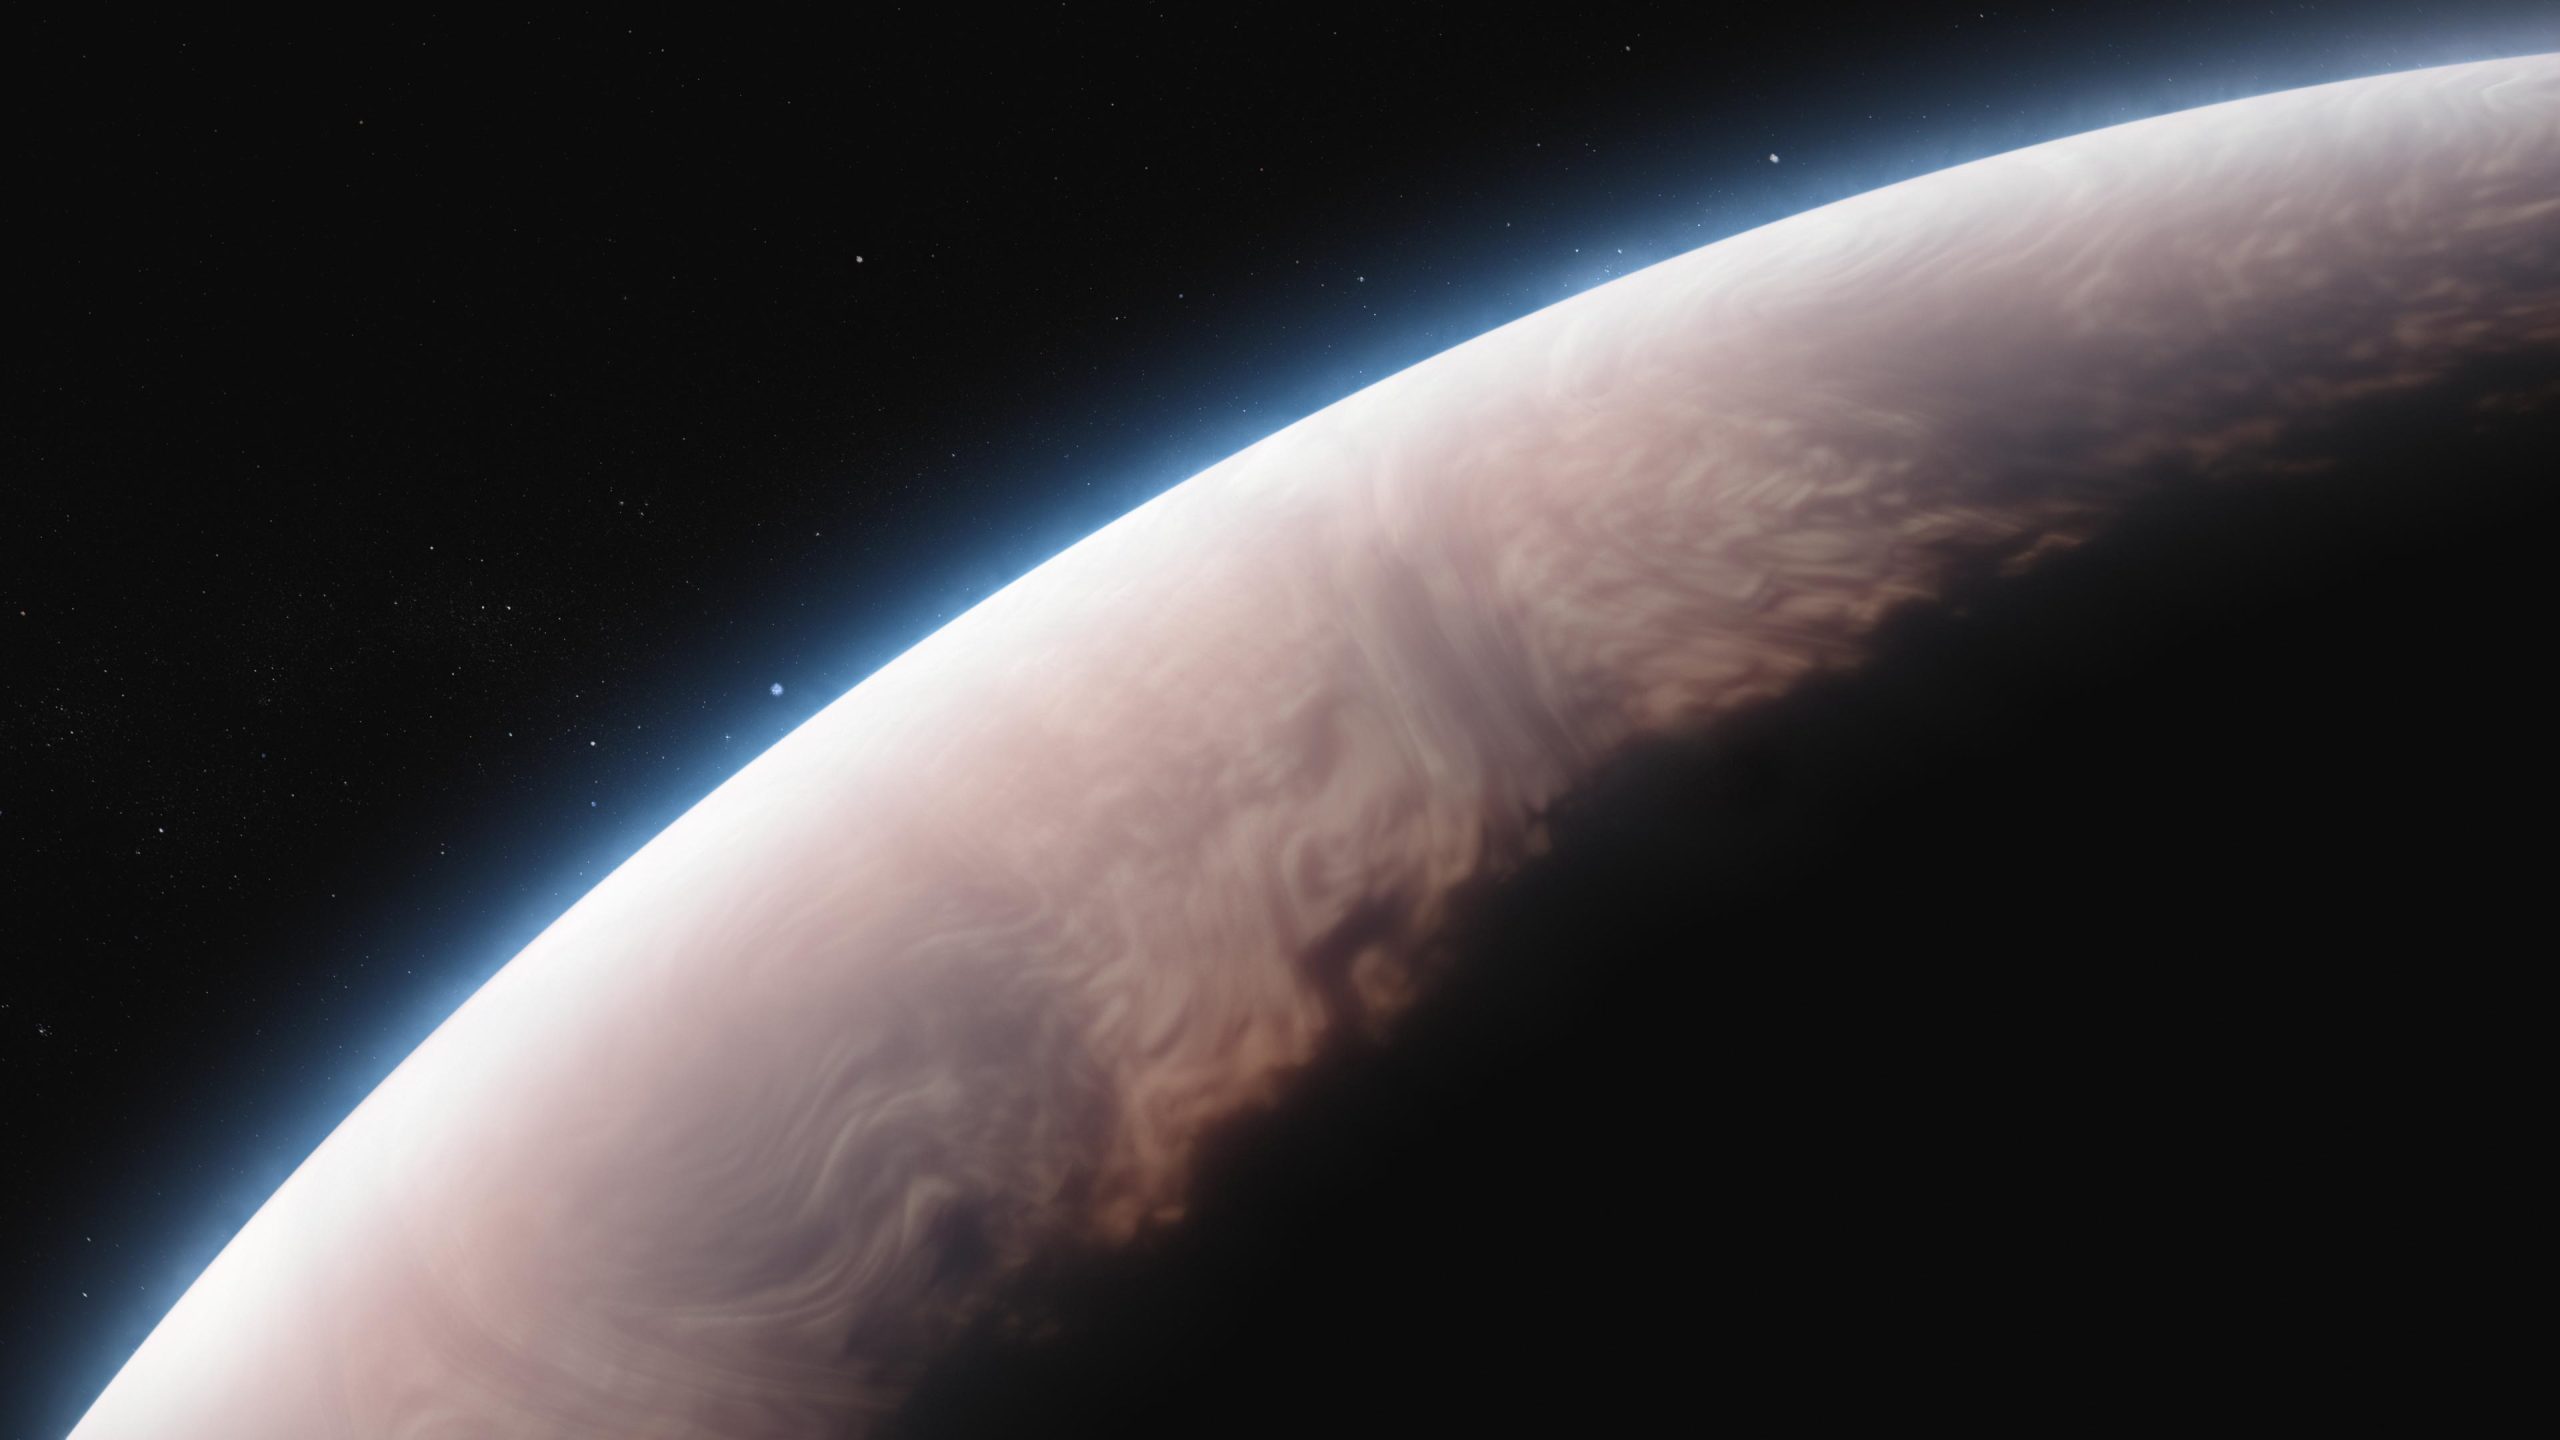 Hielo de sílice envuelve la ardiente atmósfera del caliente exoplaneta Júpiter